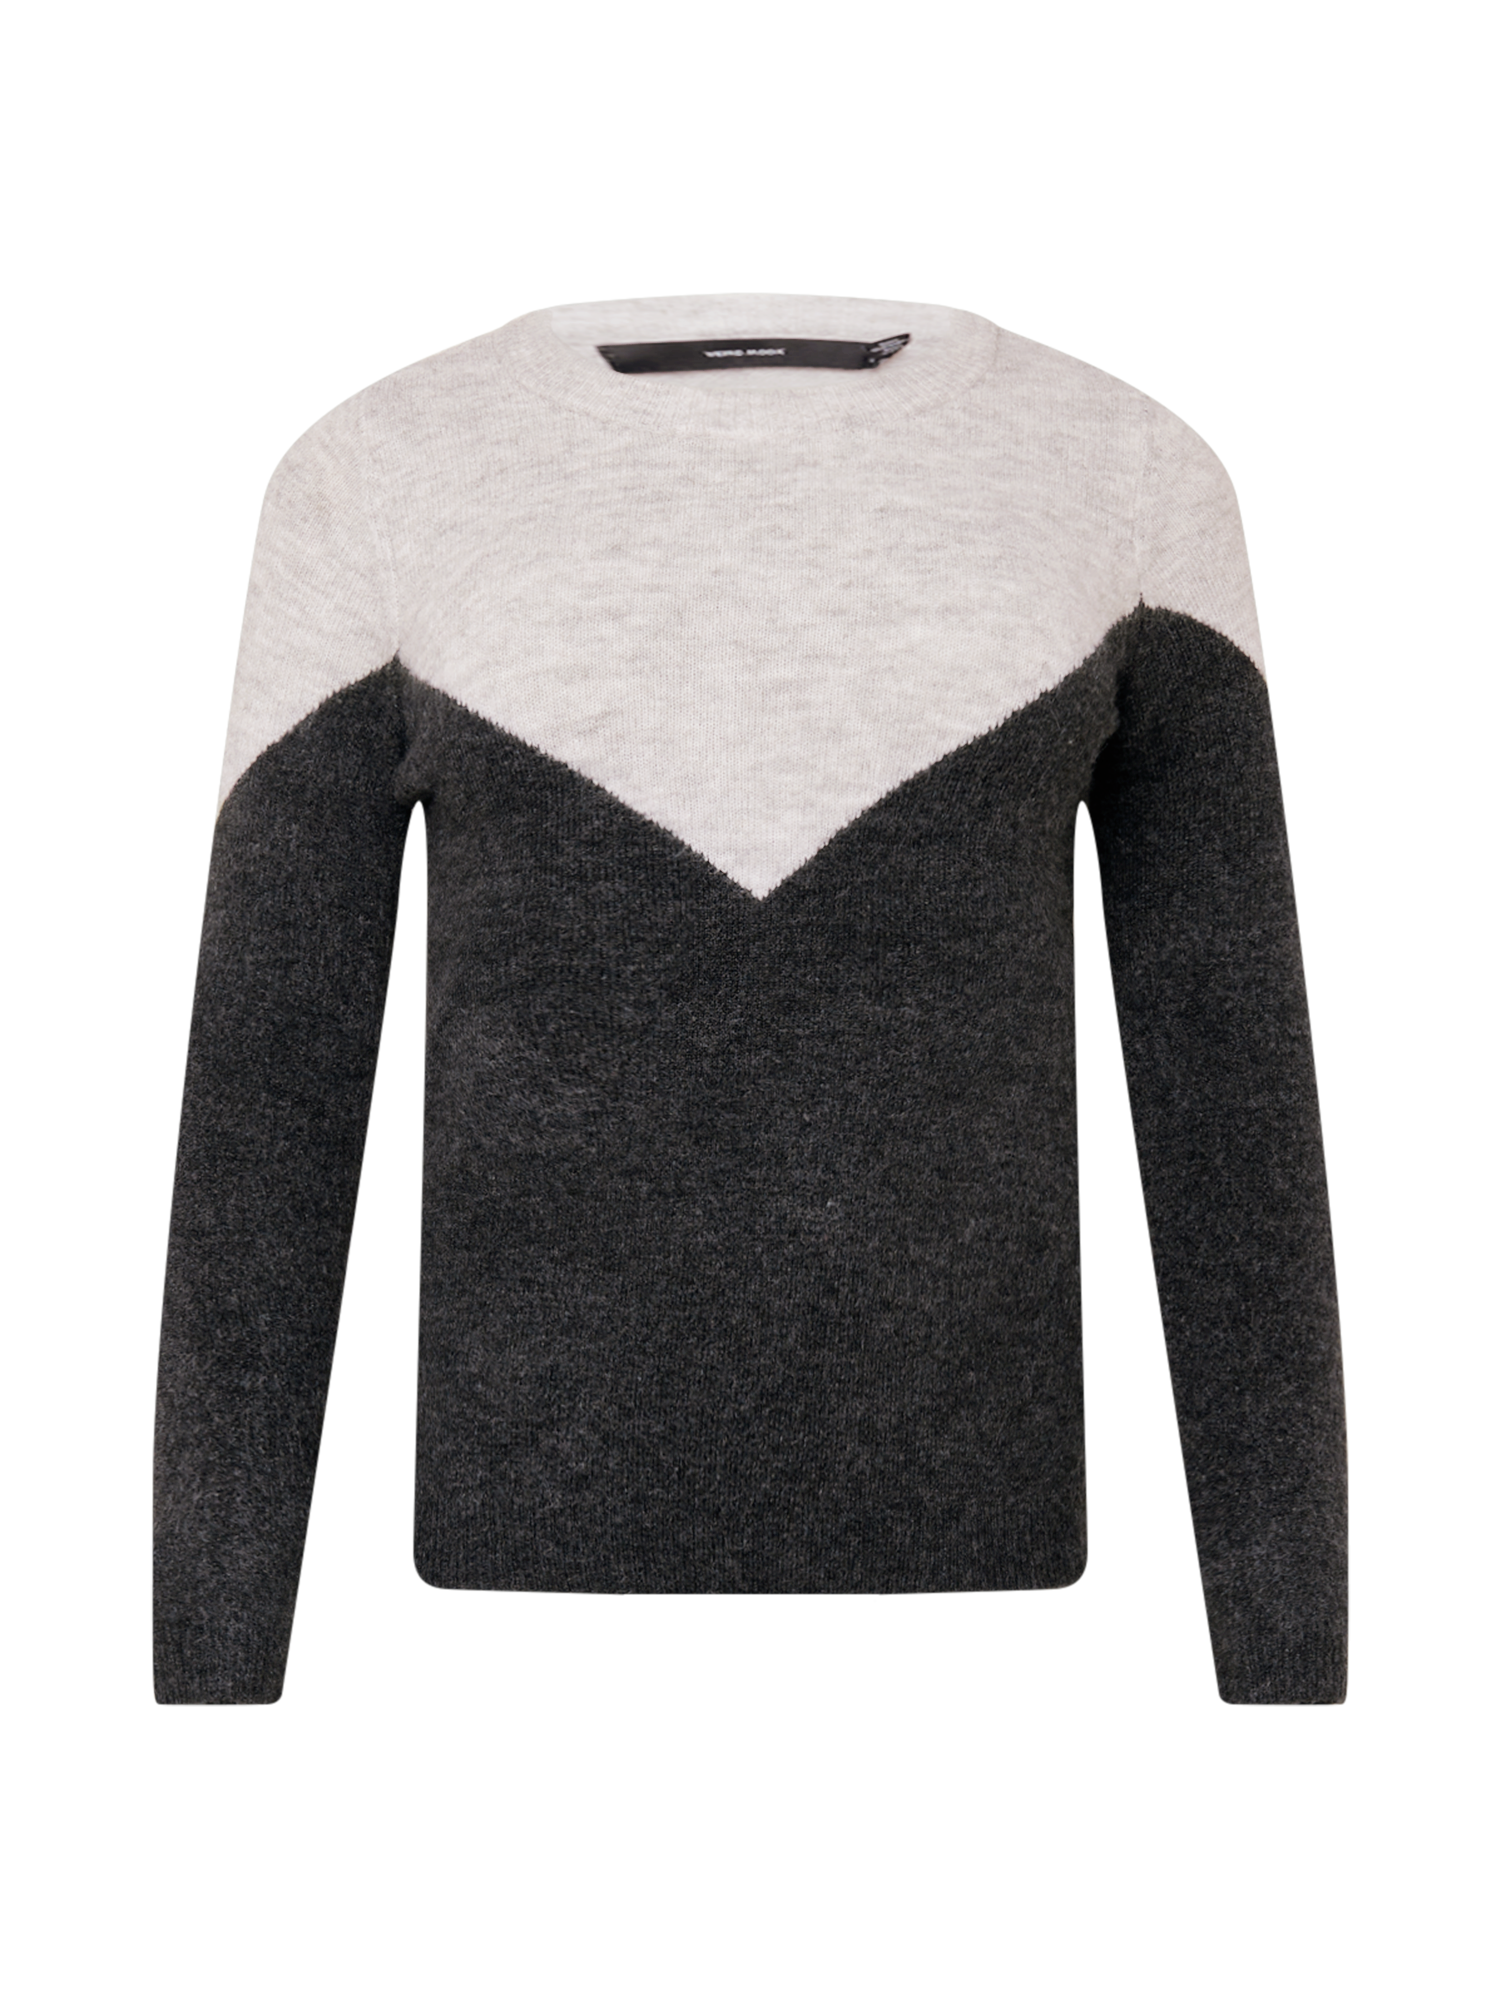 Swetry & dzianina Odzież Vero Moda Curve Sweter Plaza w kolorze Szary, Ciemnoszarym 